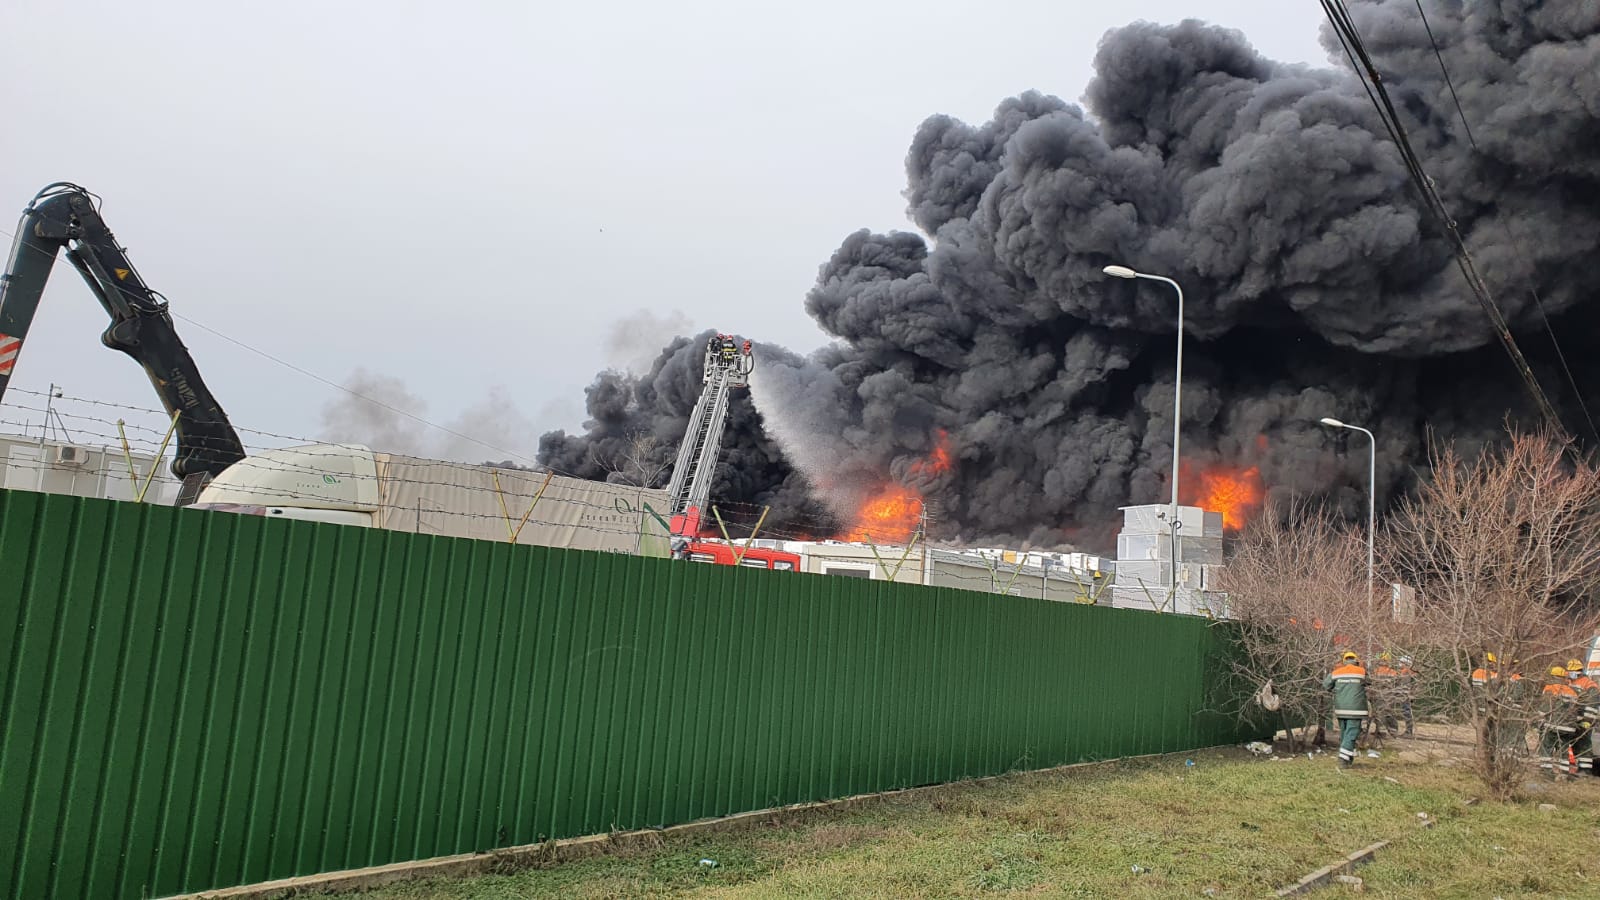 Incendiu puternic în Buzău, unde o hală a fost cuprinsă de flăcări. Populația, avertizată printr-un mesaj RO-ALERT - Imaginea 4